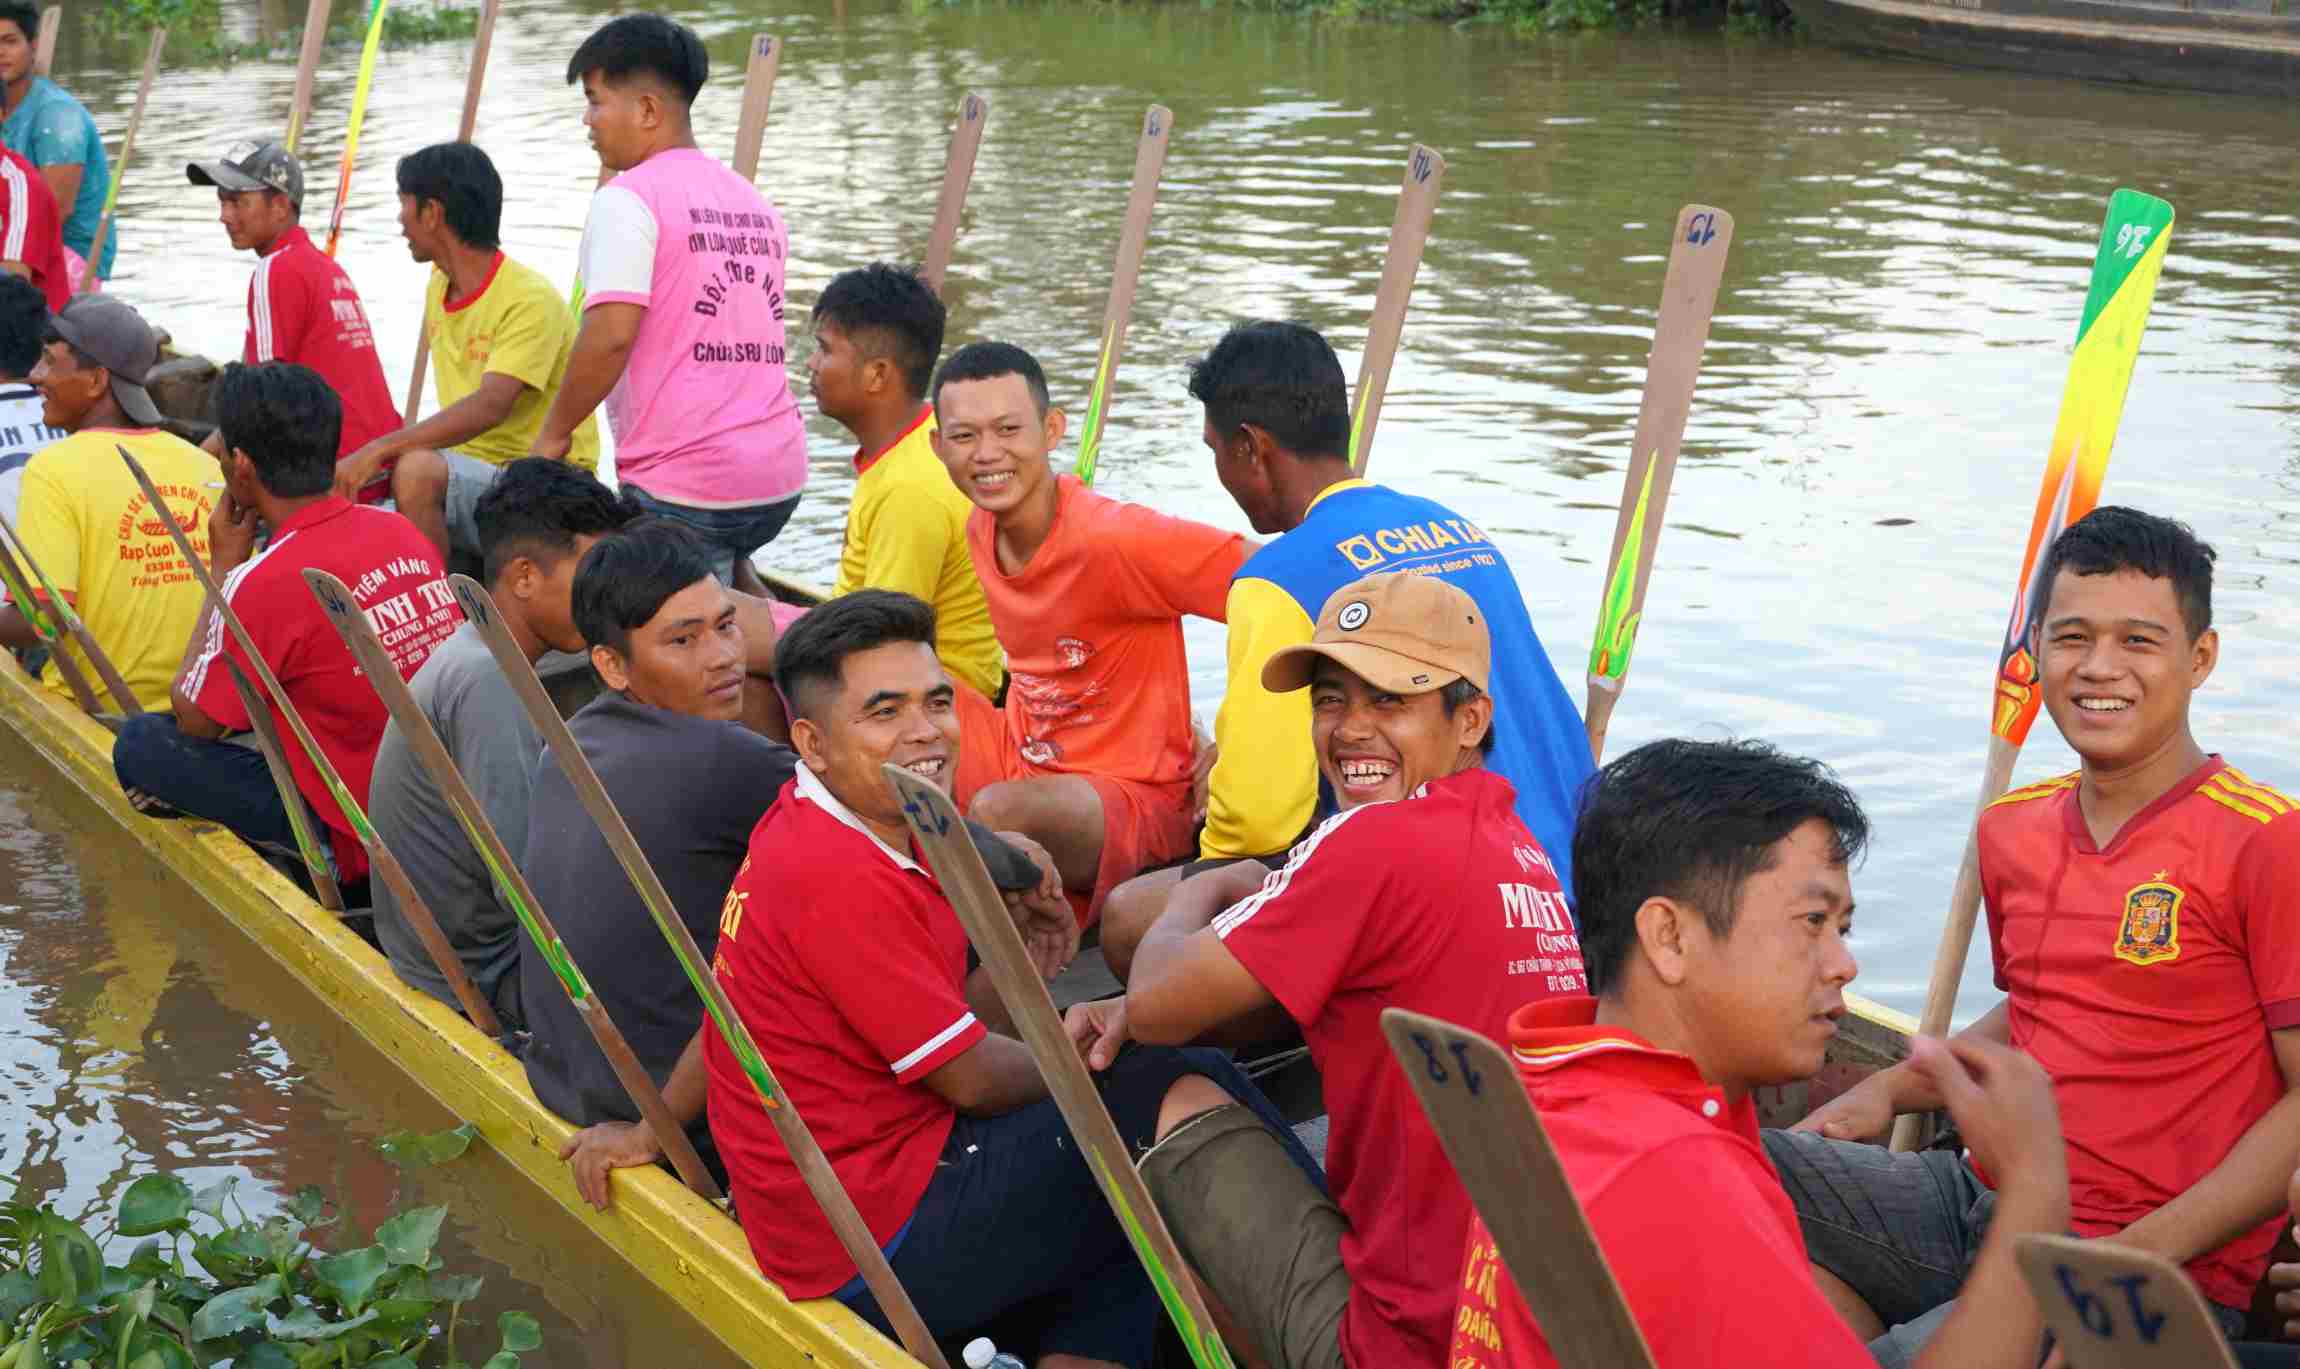 Đội ghe chùa Chén Kiểu đùa vui trong lúc tập luyện trên sông.